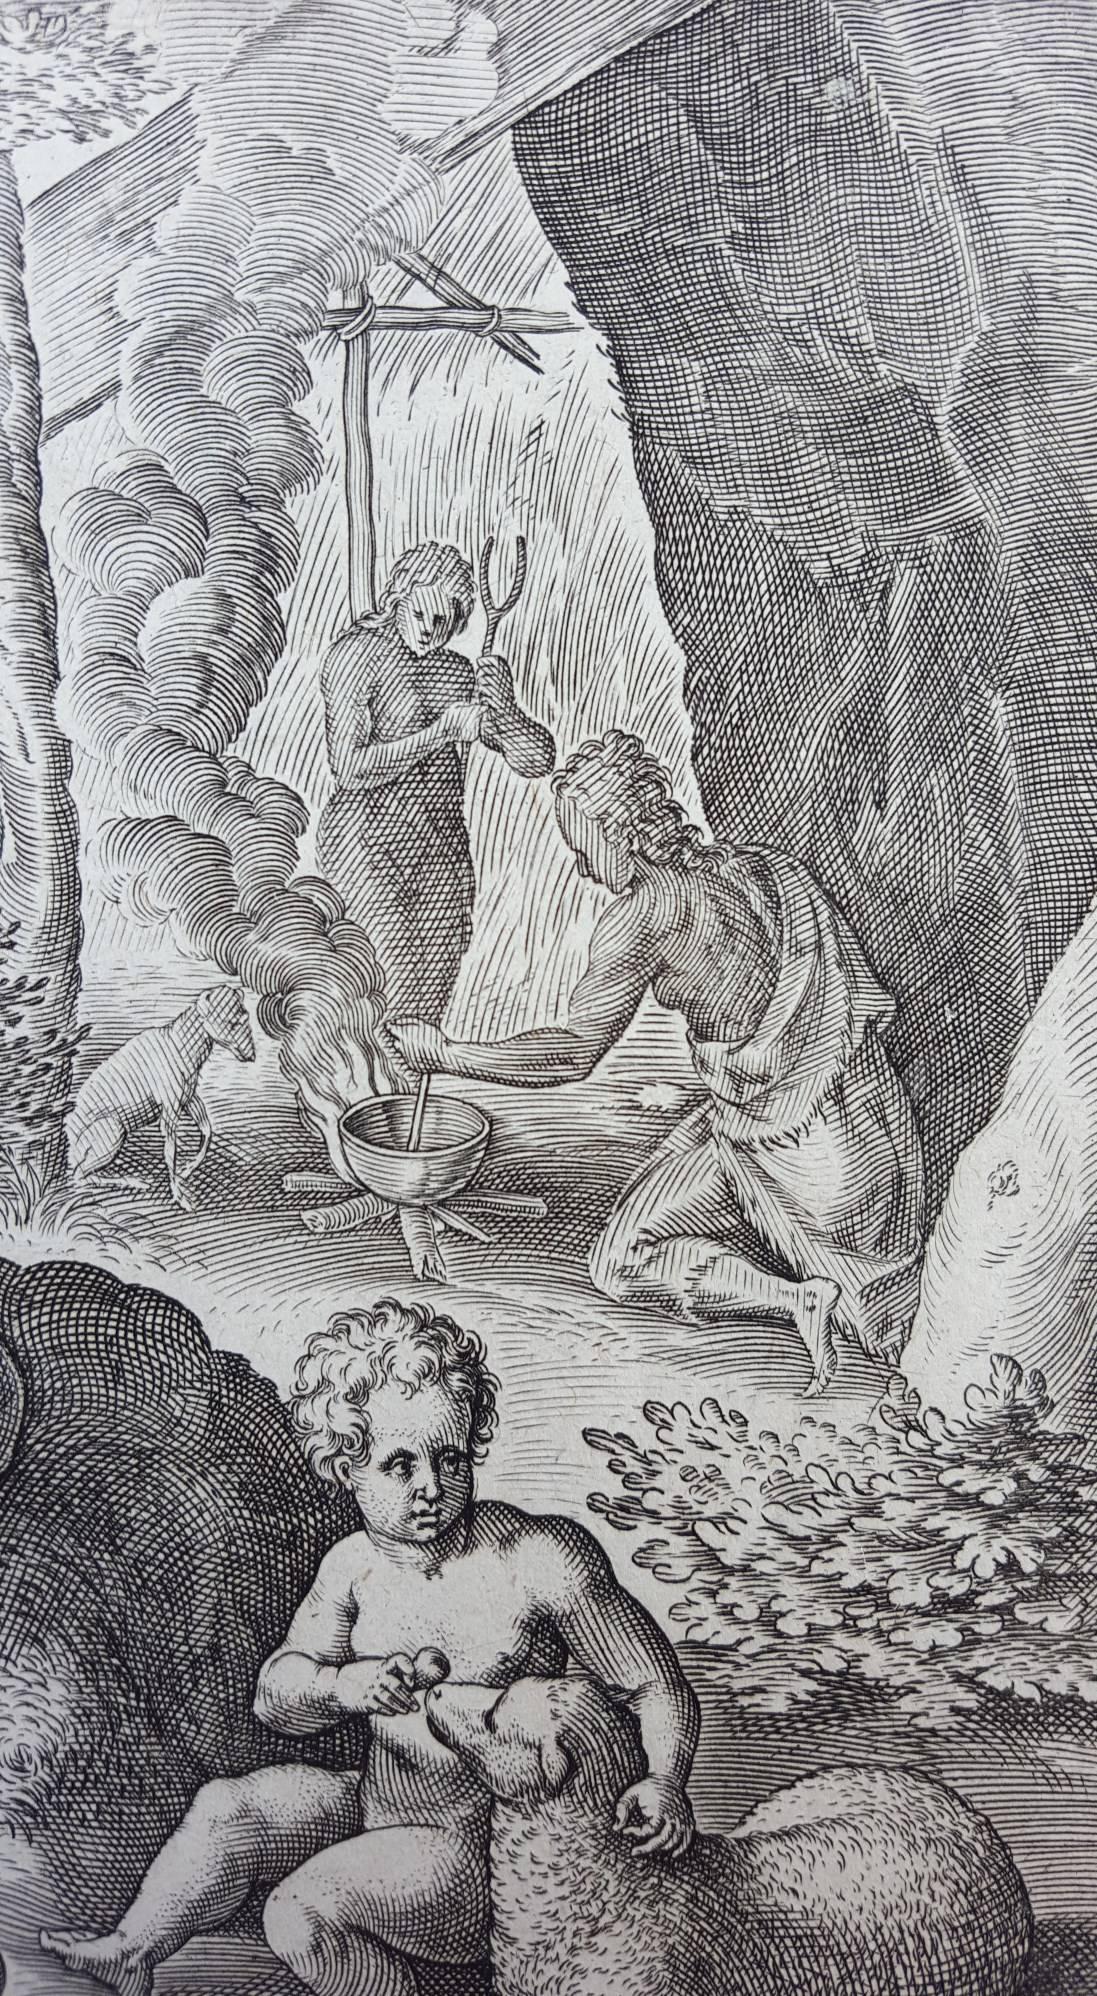 Lapsus homo tolerant miseram cum coniuge vitam - Gray Figurative Print by Johannes Sadeler I